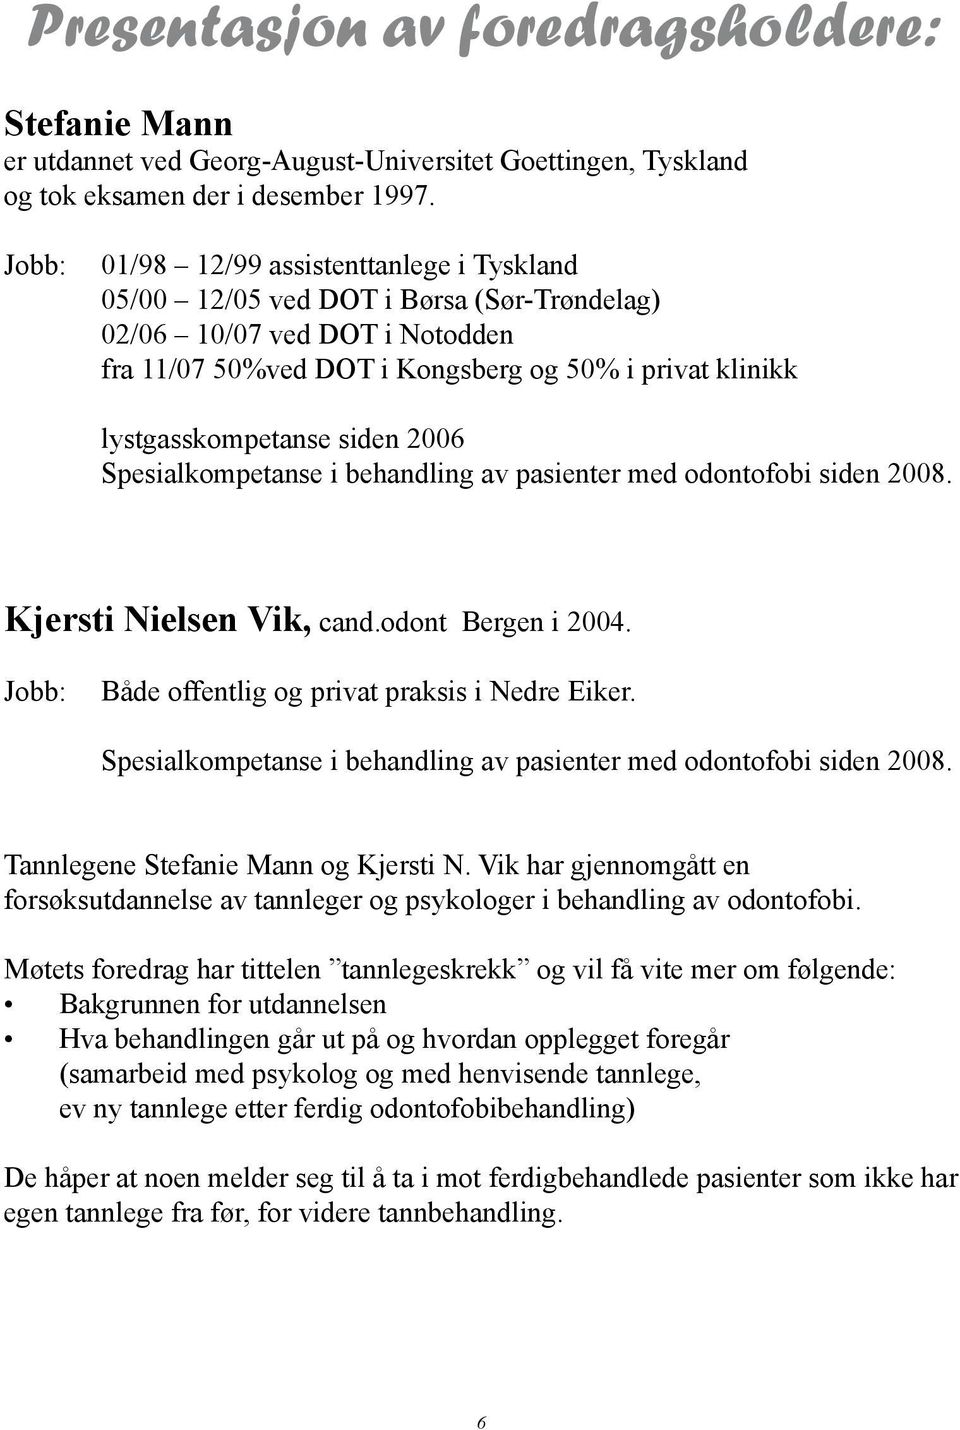 siden 2006 Spesialkompetanse i behandling av pasienter med odontofobi siden 2008. Kjersti Nielsen Vik, cand.odont Bergen i 2004. Jobb: Både offentlig og privat praksis i Nedre Eiker.